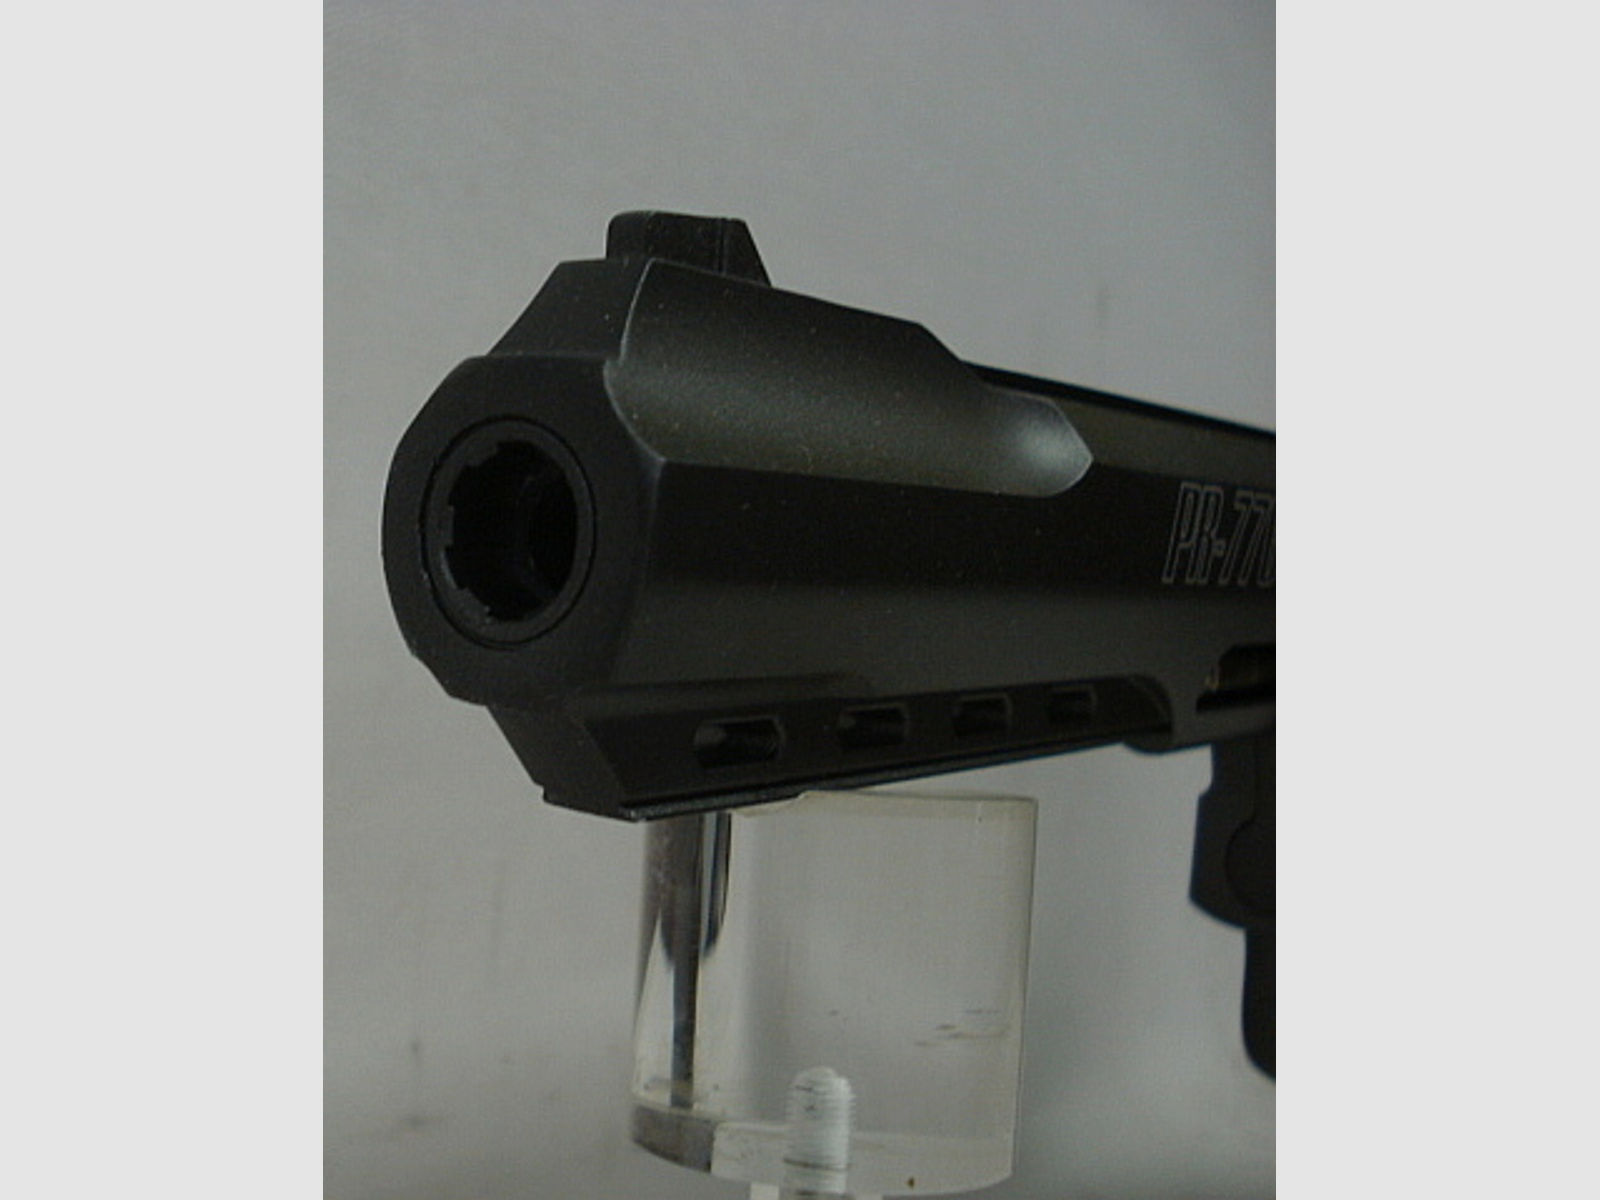 PR-776 Revolver Kal.4,50mm - inkl. Tasche und Zubehör